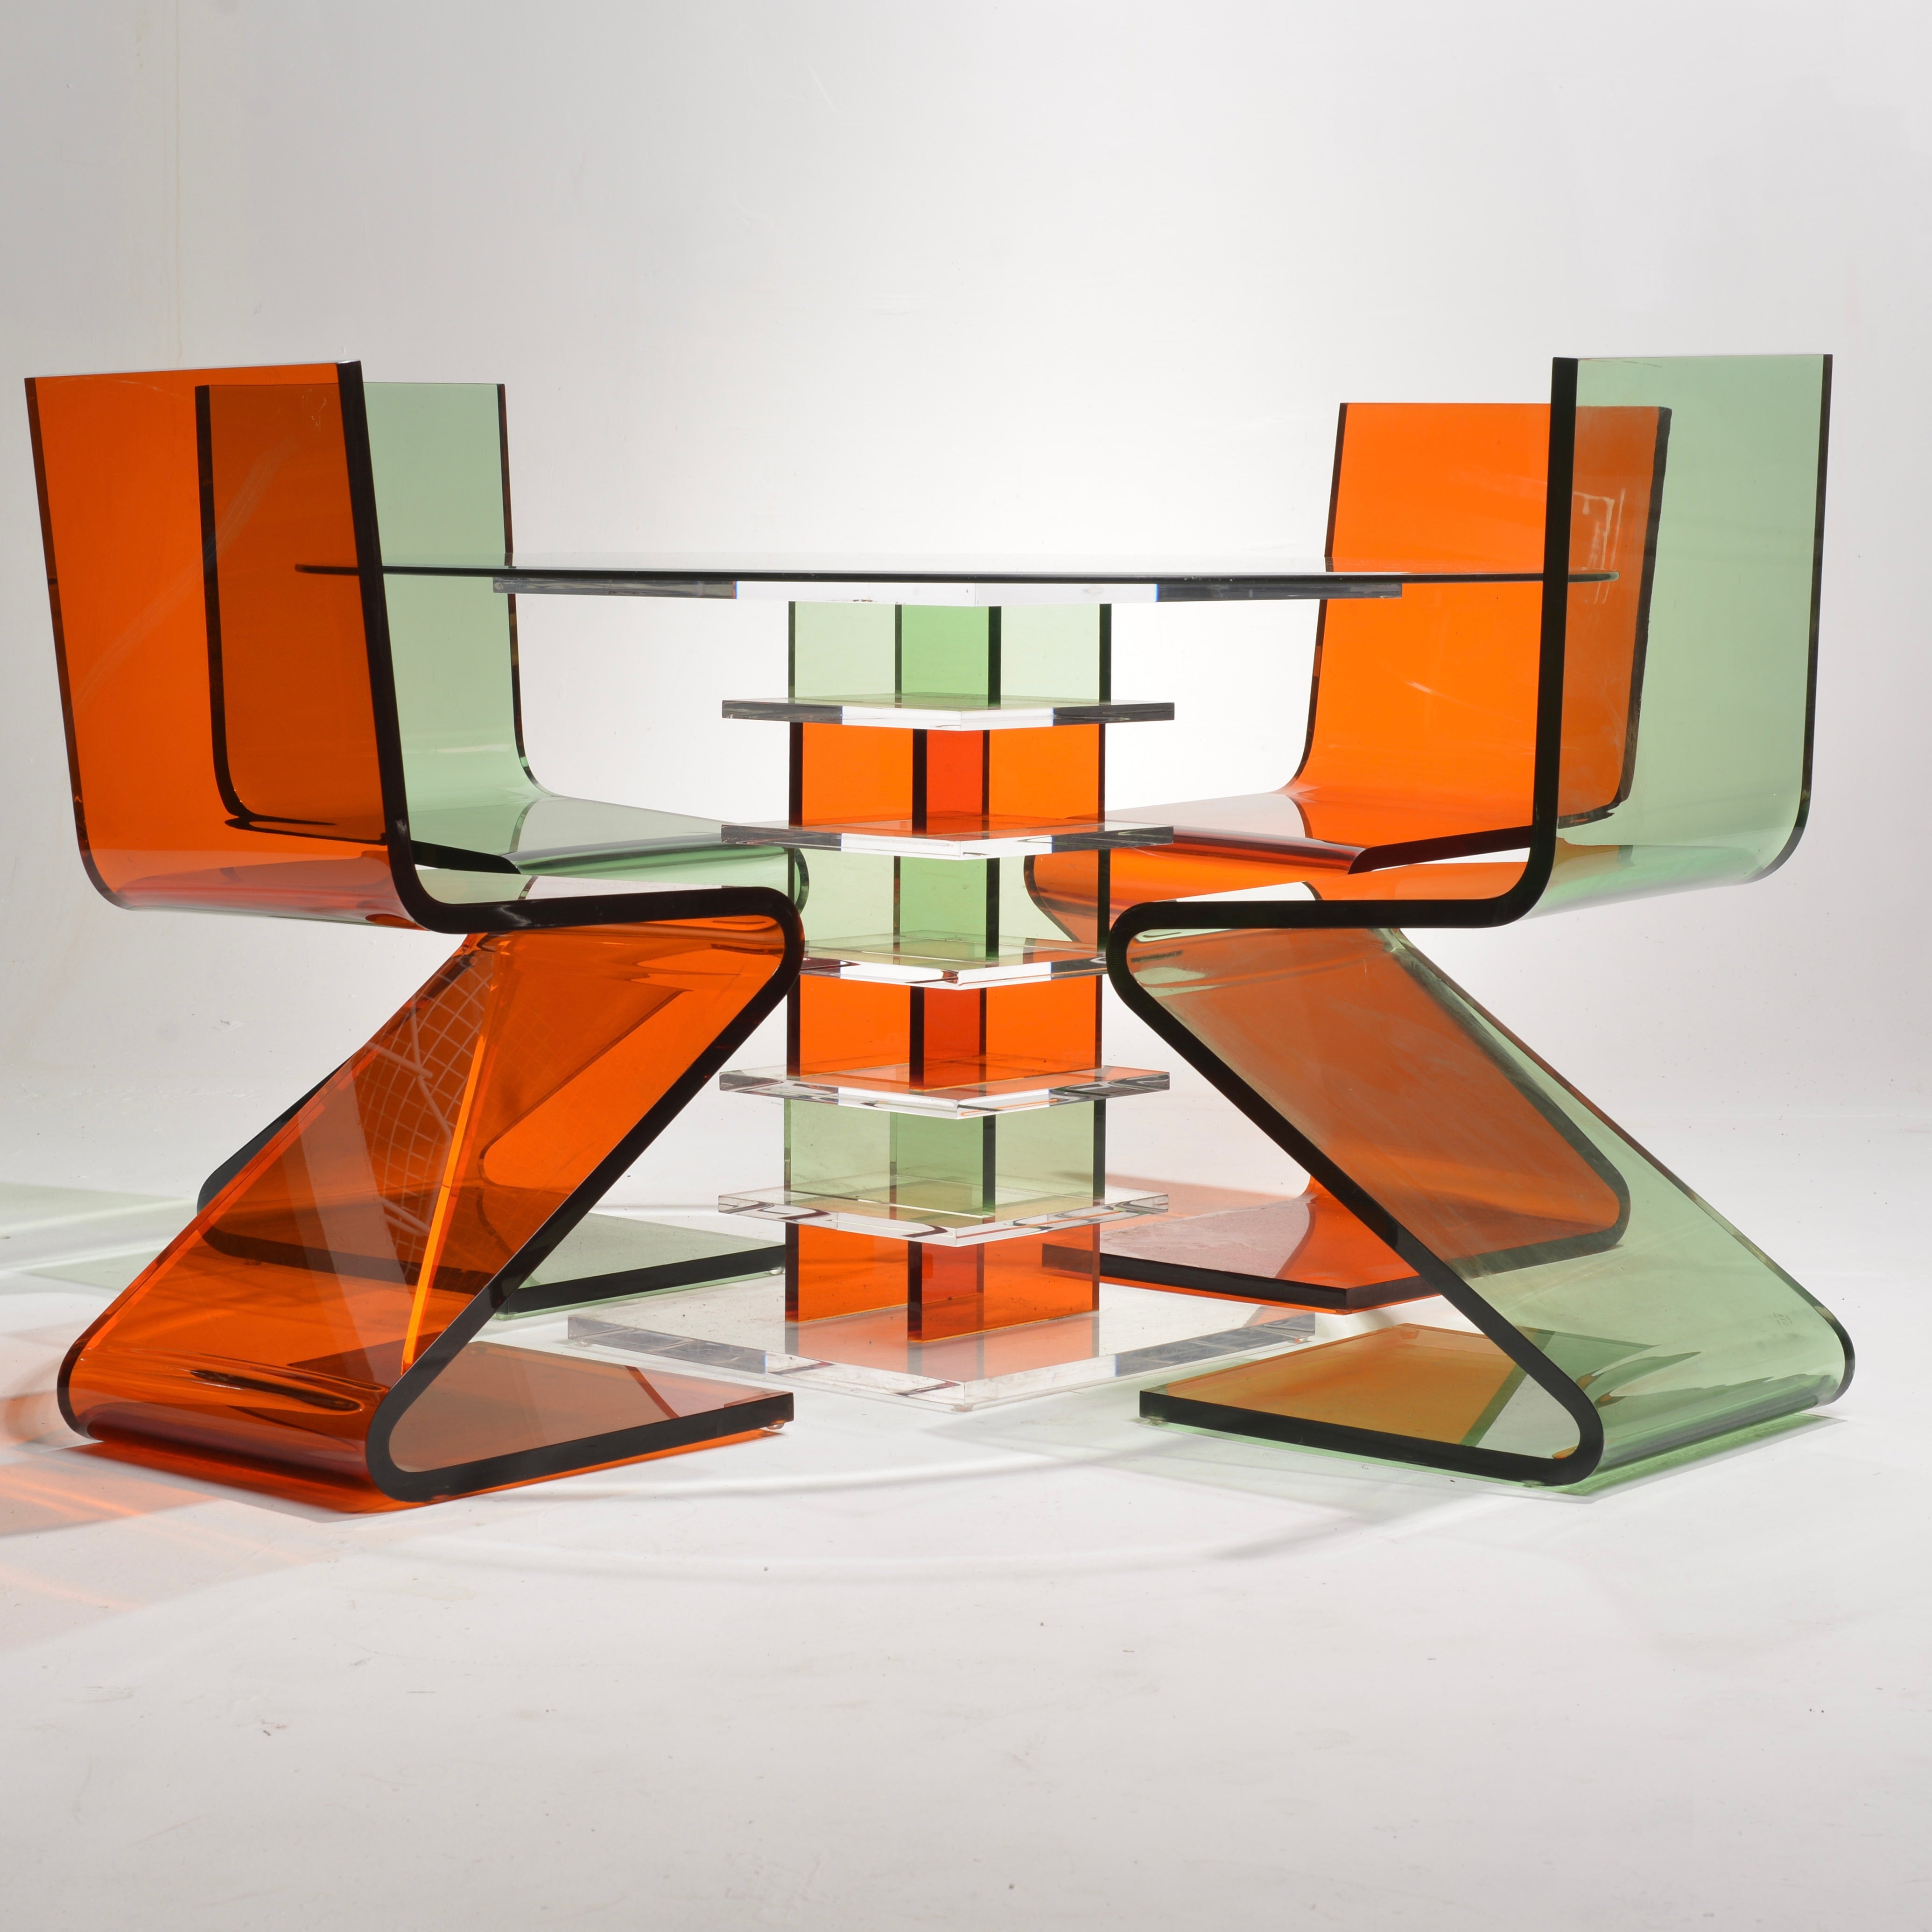 Fabriquées par Shlomi Haziza pour H Studio, la table et les chaises Z en lucite vintage incarnent l'élégance intemporelle avec une touche de modernité. Inspirées par des lignes épurées et l'attrait de la lucite, ces pièces allient le charme rétro à